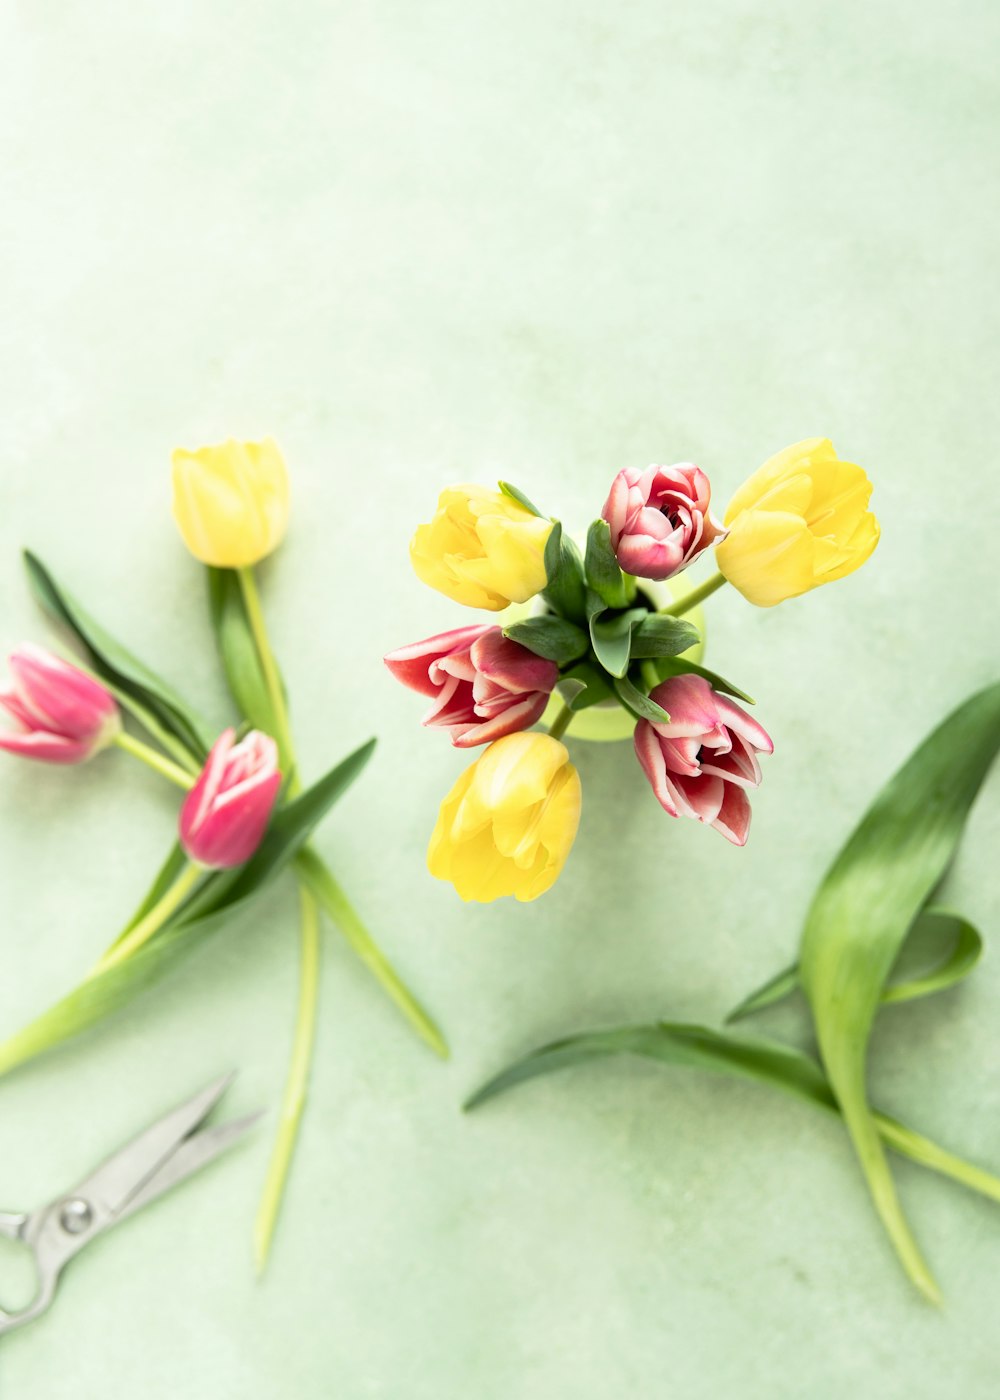 flores de tulipán amarillas y rosas